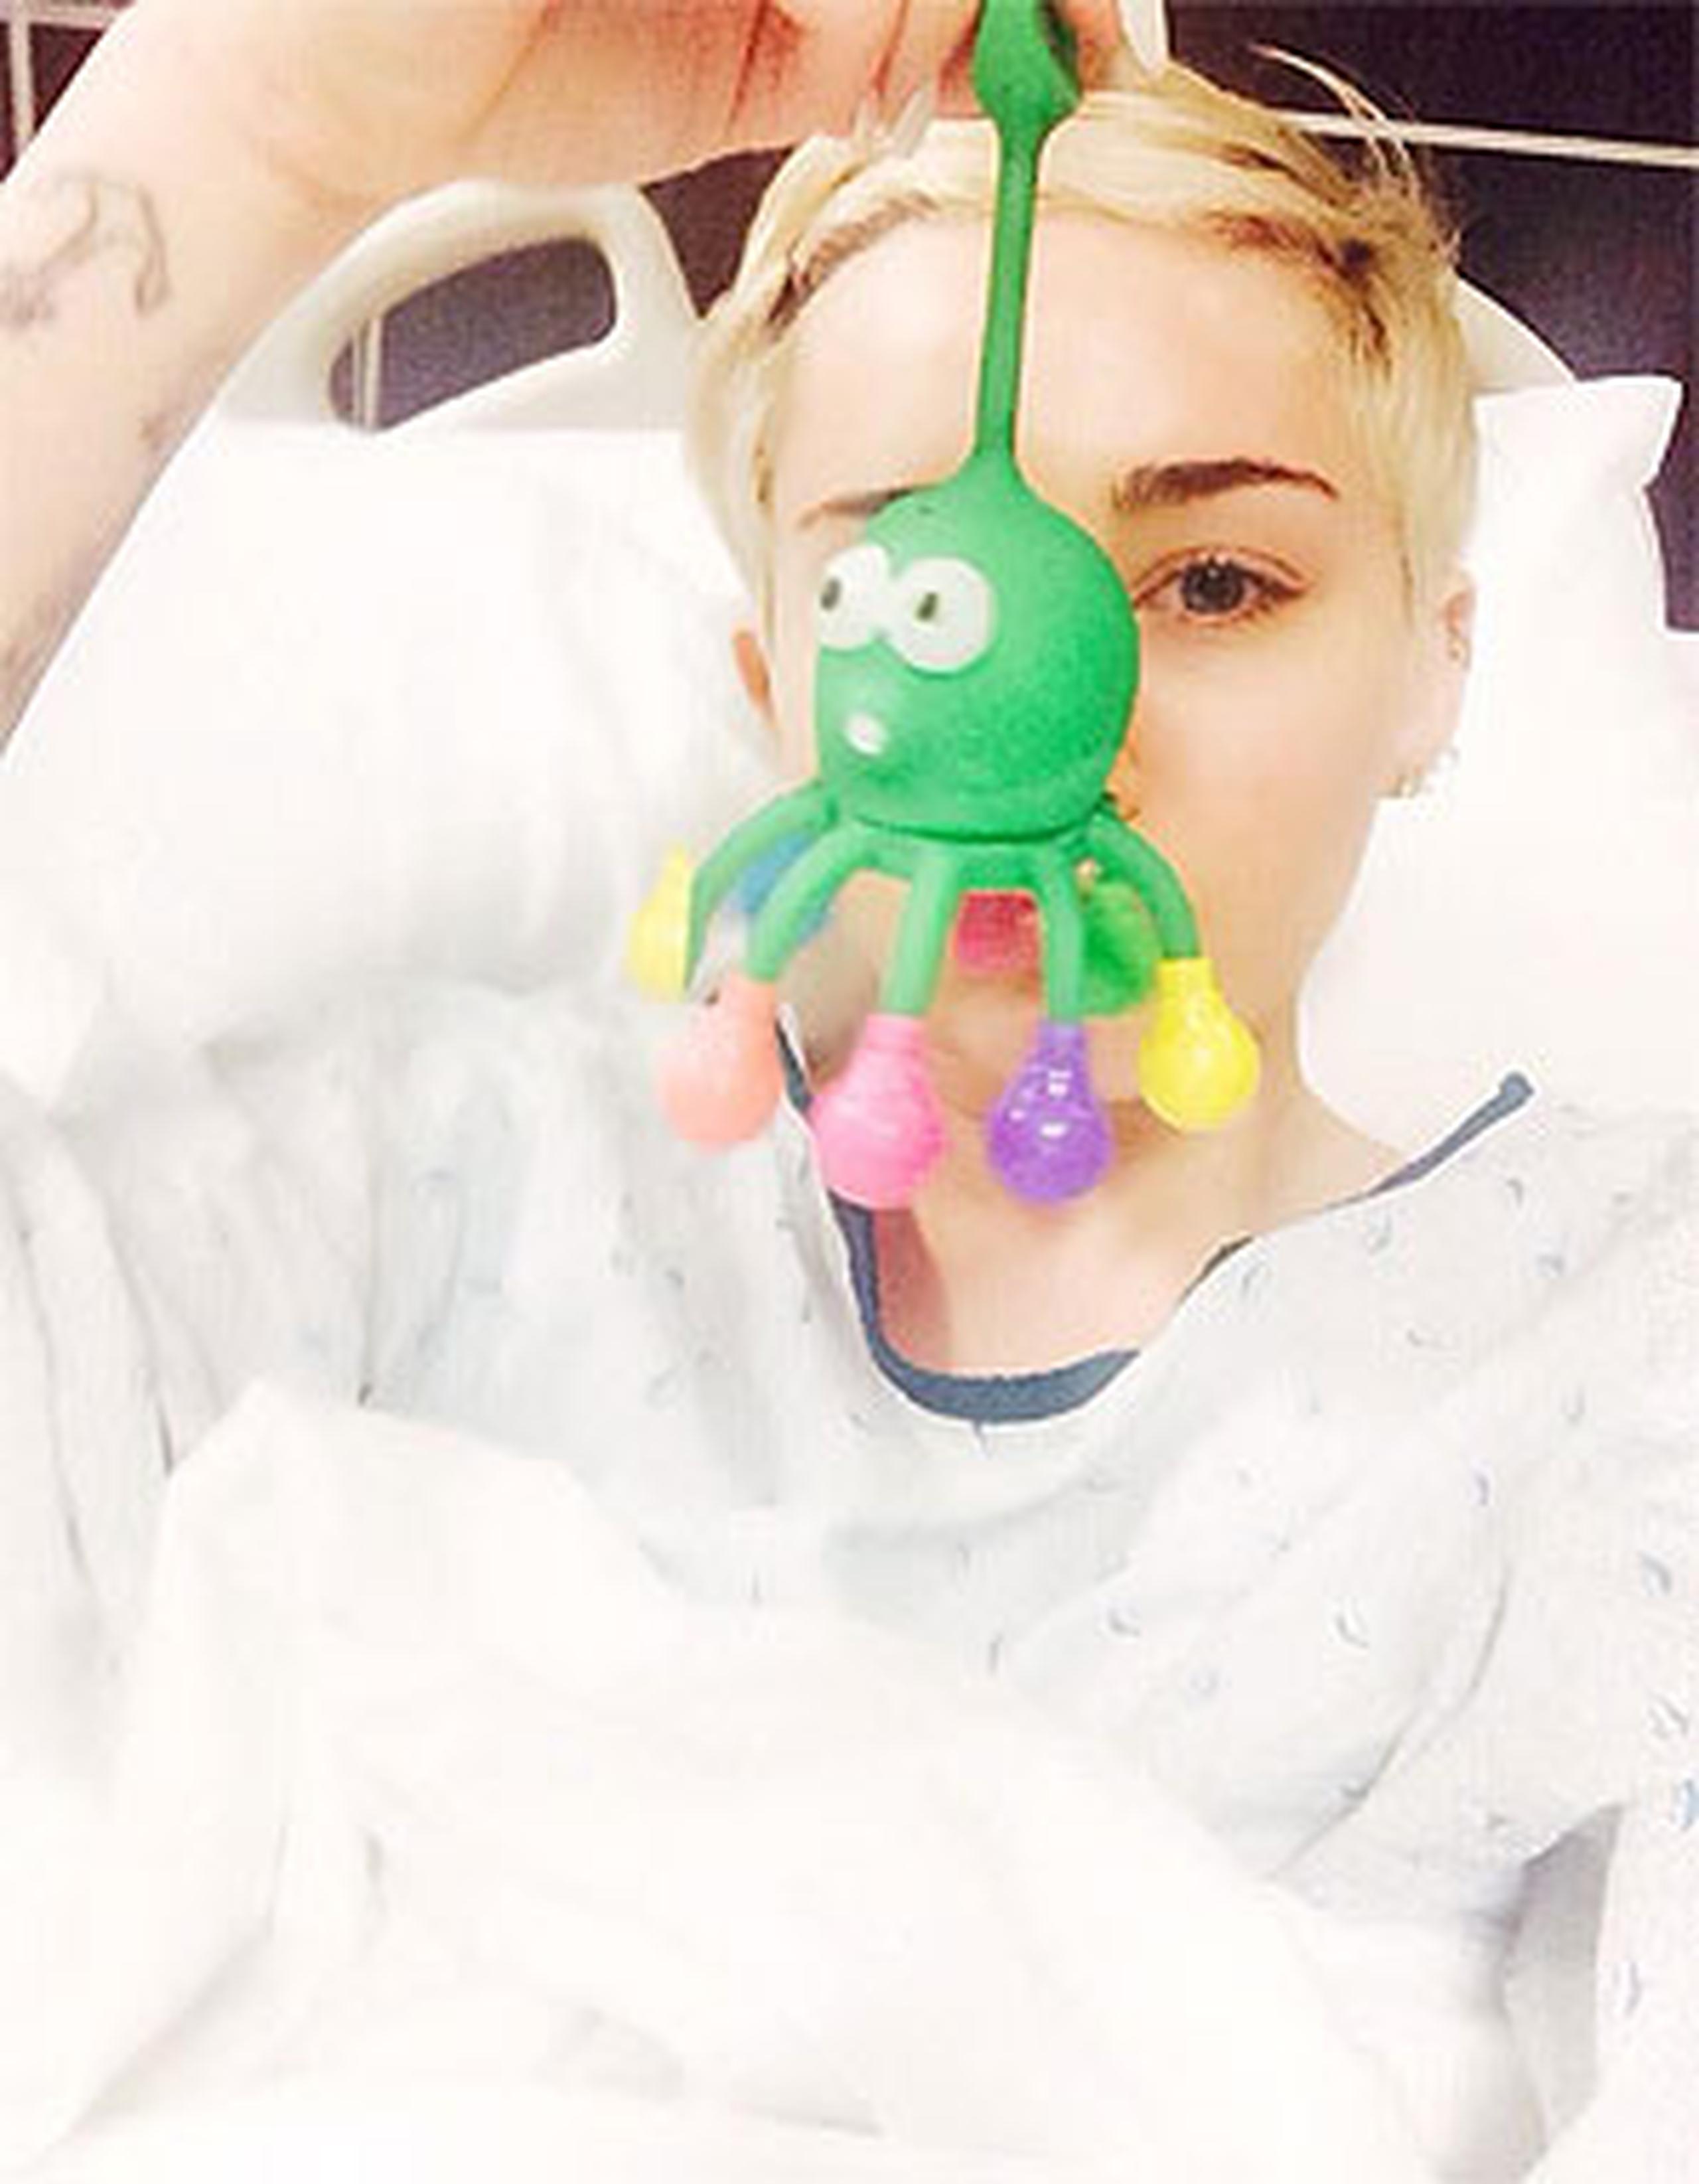 La joven cantante compartió una foto desde su camilla de hospital con un pulpito de juguete. (Twitter)